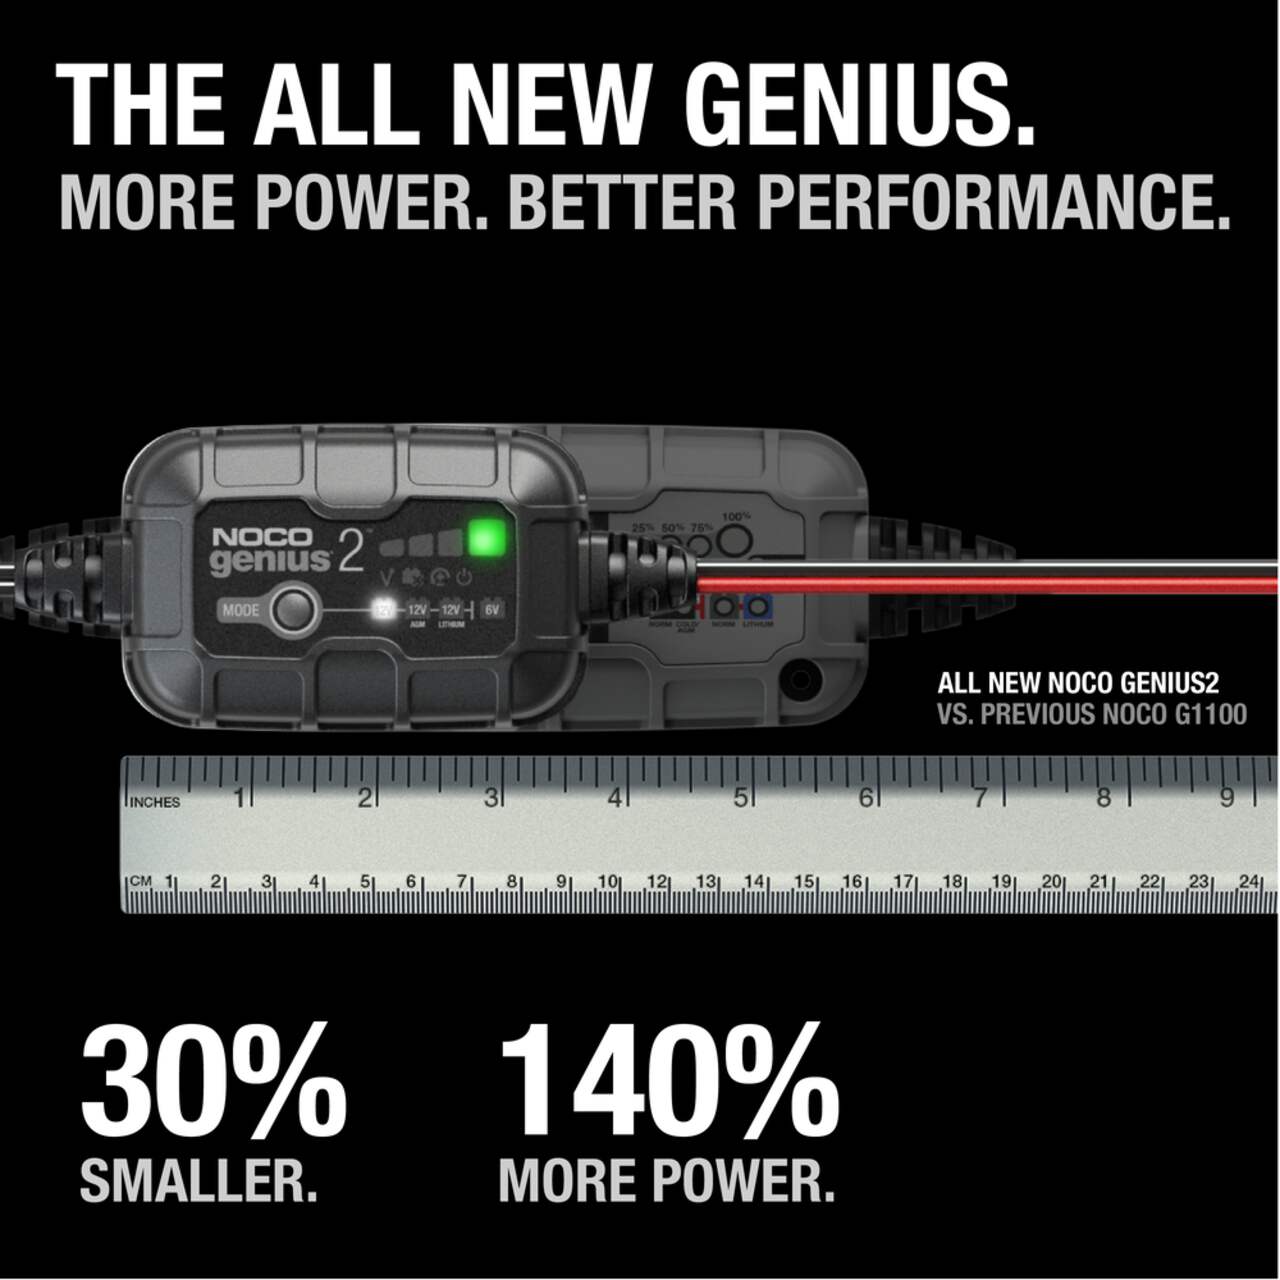 GENIUS2D Chargeur intelligent de maintien Genius 12V 2A Pb Batteries Expert